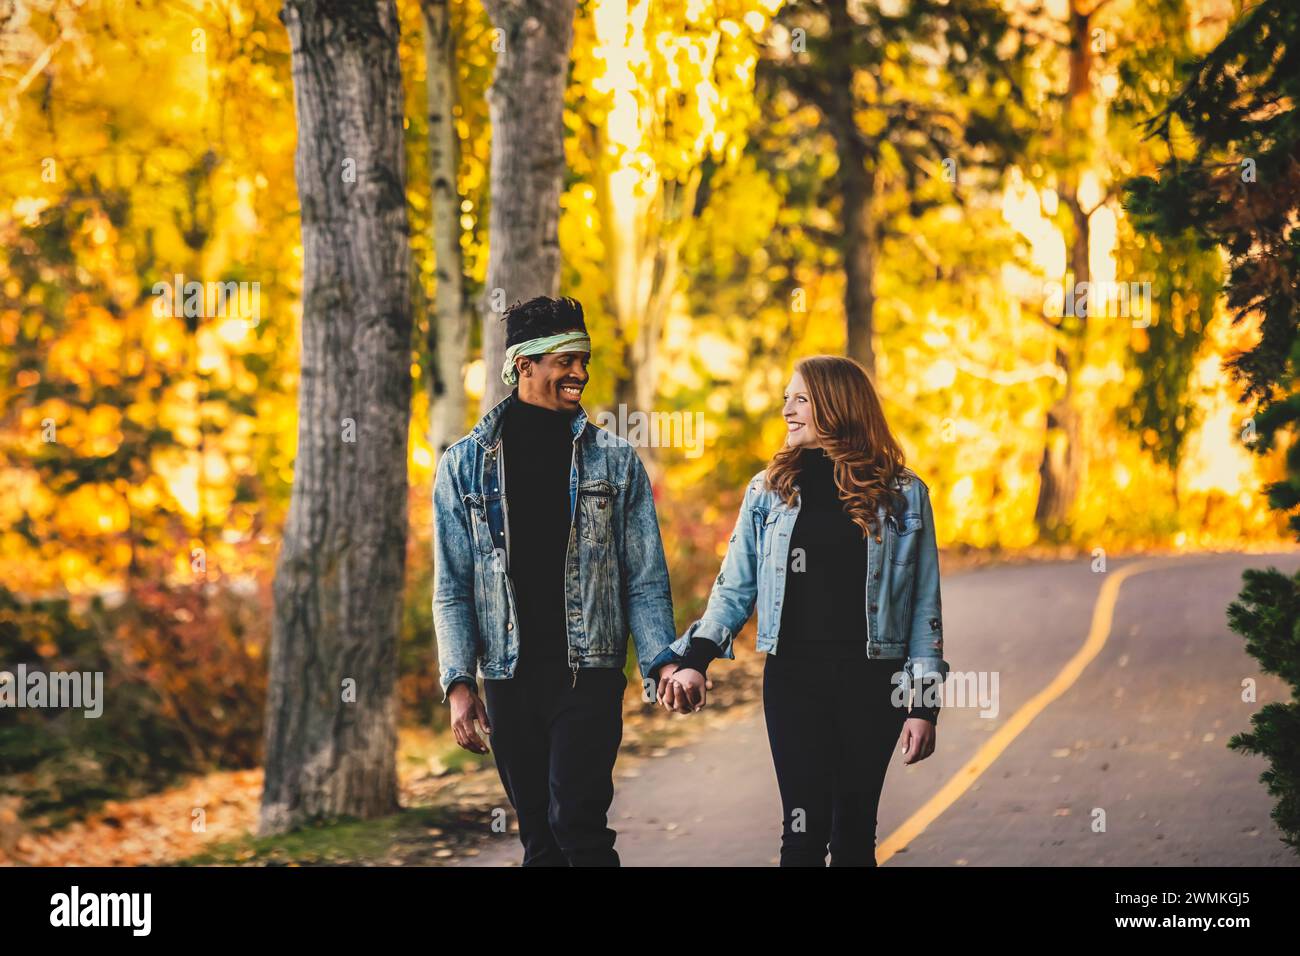 Una coppia di sposi di razza mista sorridente l'un l'altro, camminando lungo una strada in un parco cittadino durante un'uscita di famiglia autunnale, trascorrendo del tempo insieme Foto Stock